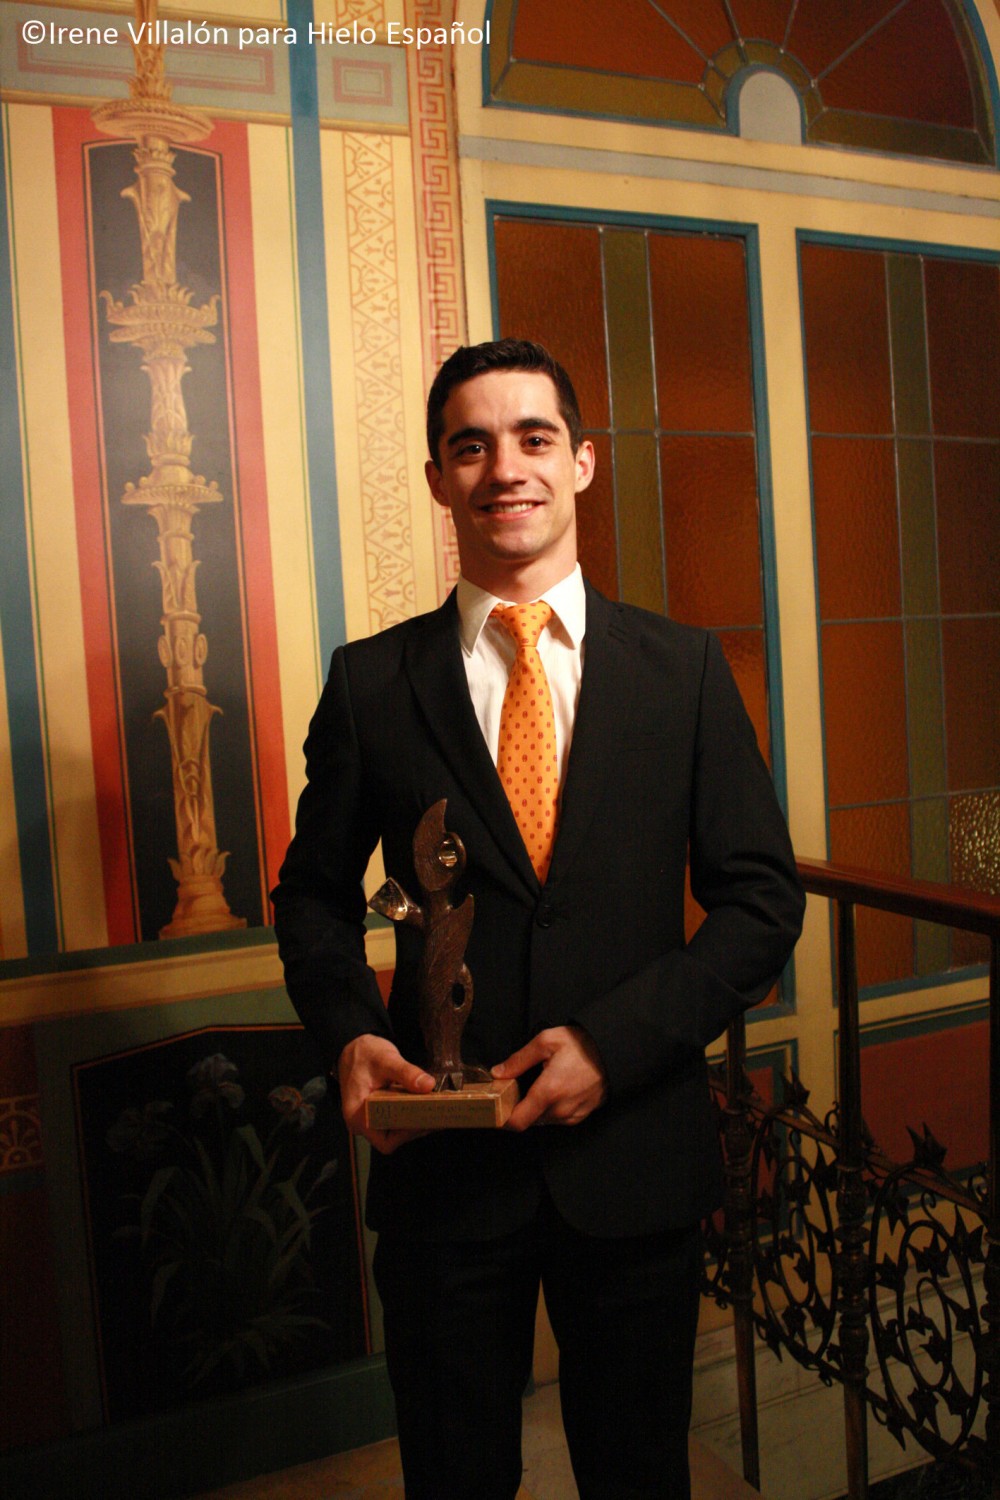 Javier Fernández, galardonado como mejor deportista 2013 por la ACPE - HIELO ESPAÑOL